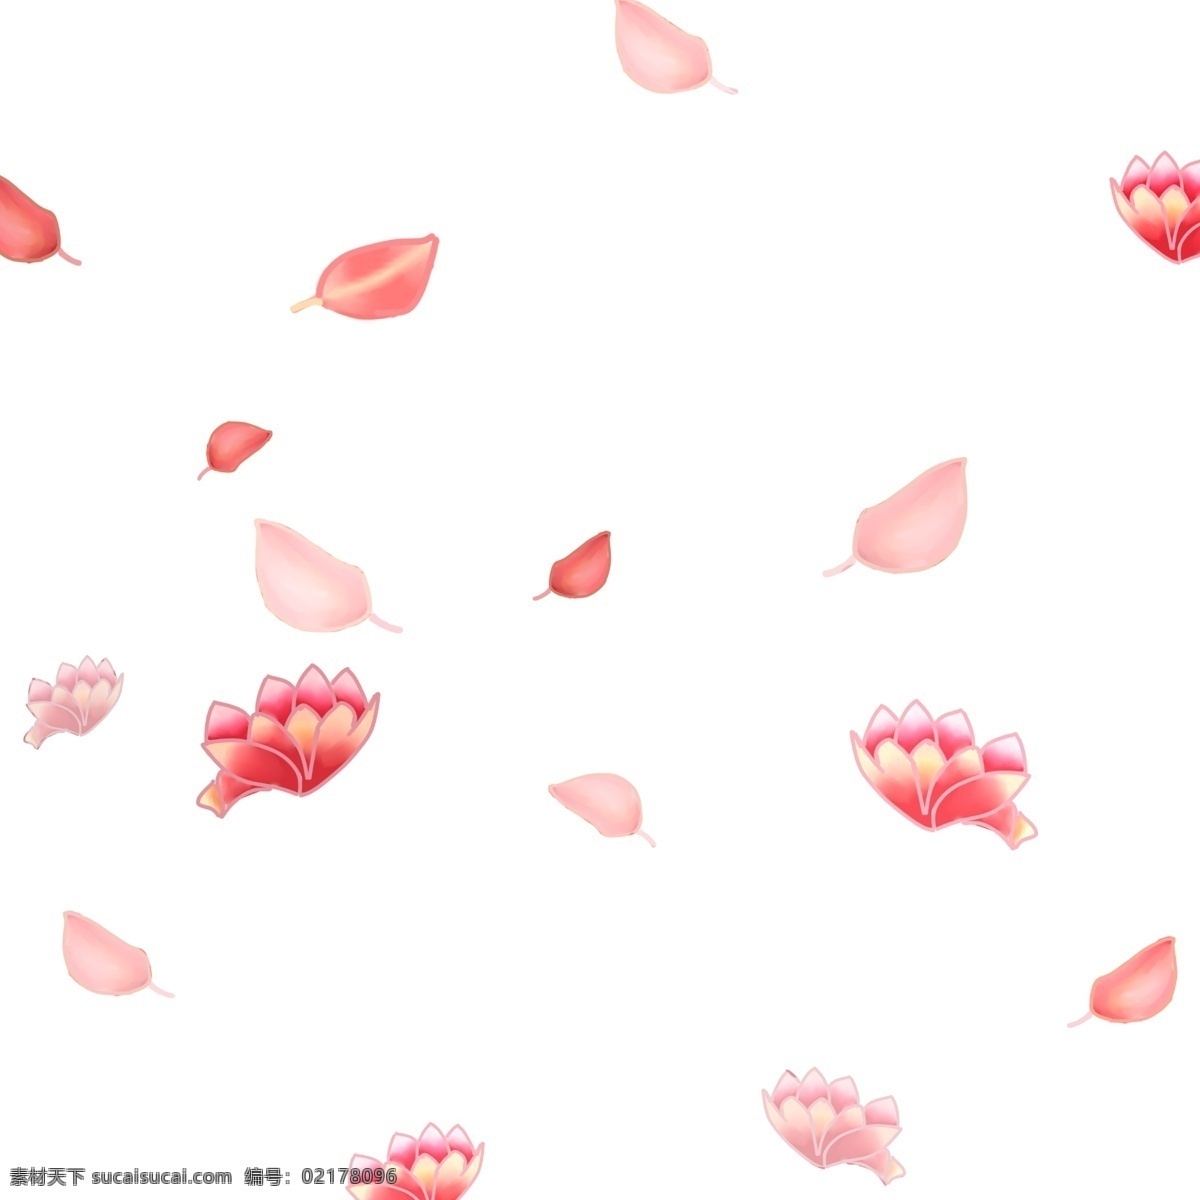 情人节 婚礼 花瓣 手绘 插画 情人节花瓣 婚礼花瓣 浪漫花瓣 手绘花瓣 卡通花瓣 漂浮的花瓣 飘落的花瓣